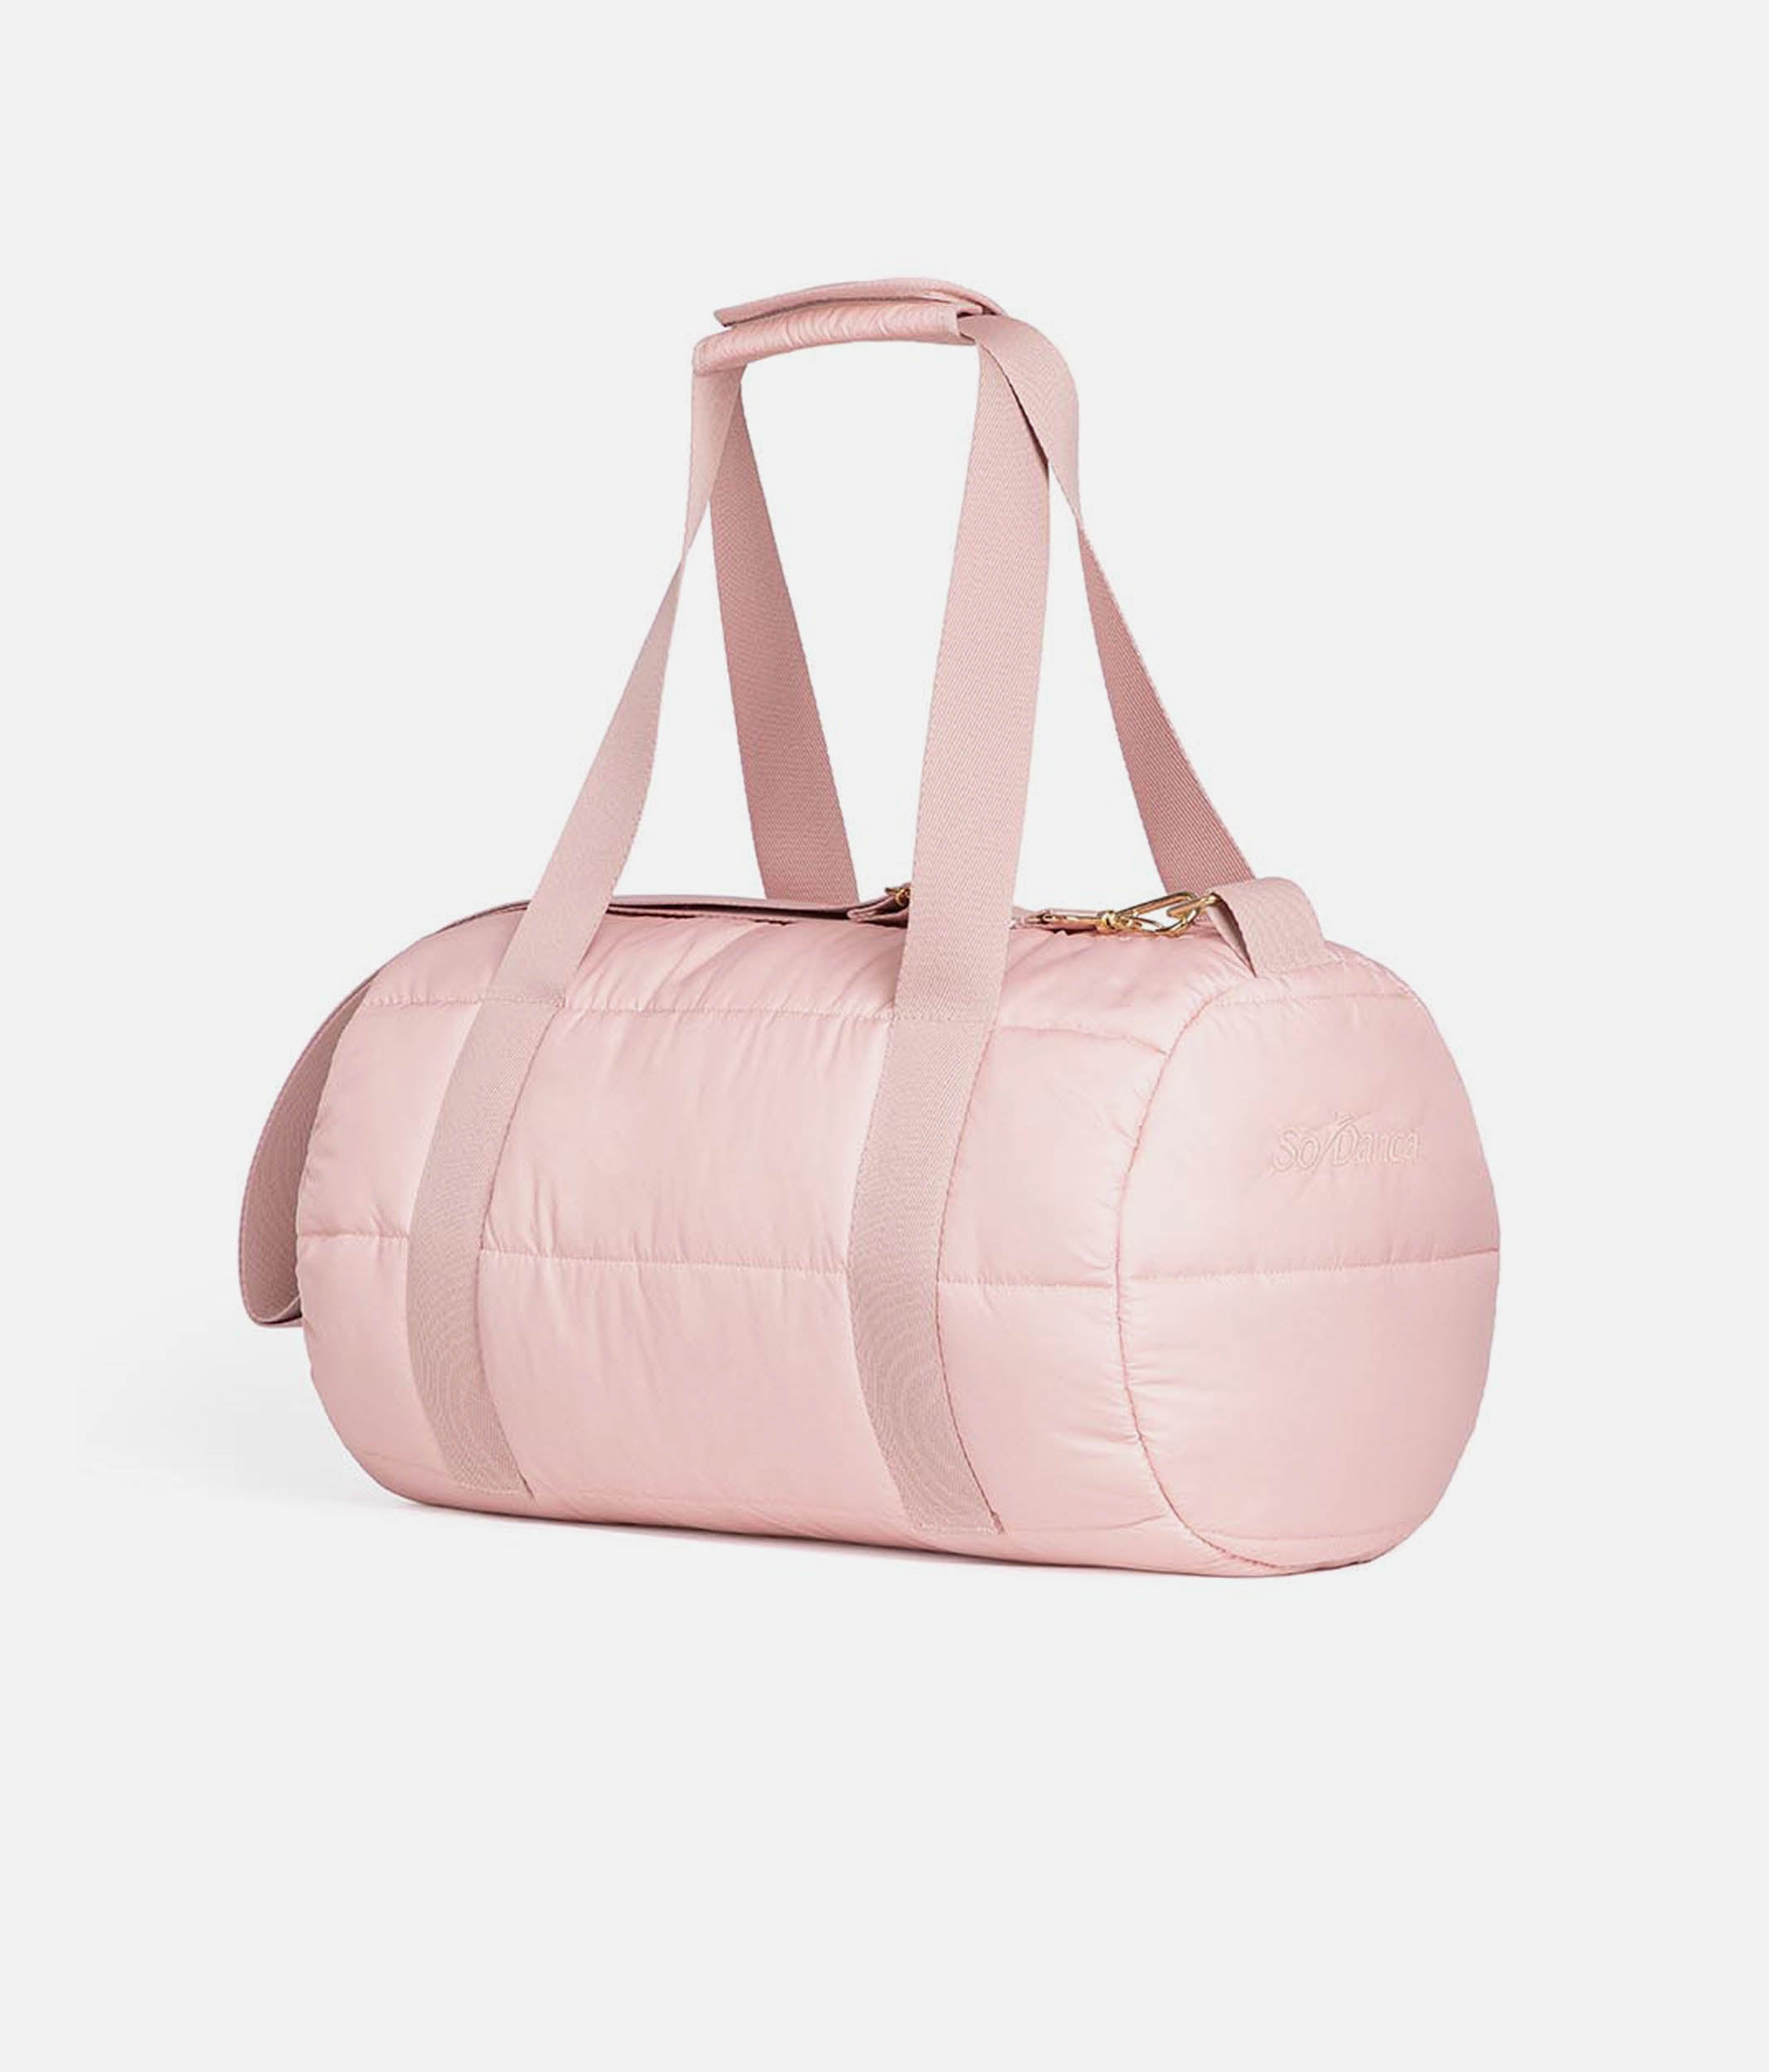 Pink Duffel Bag - BG 752